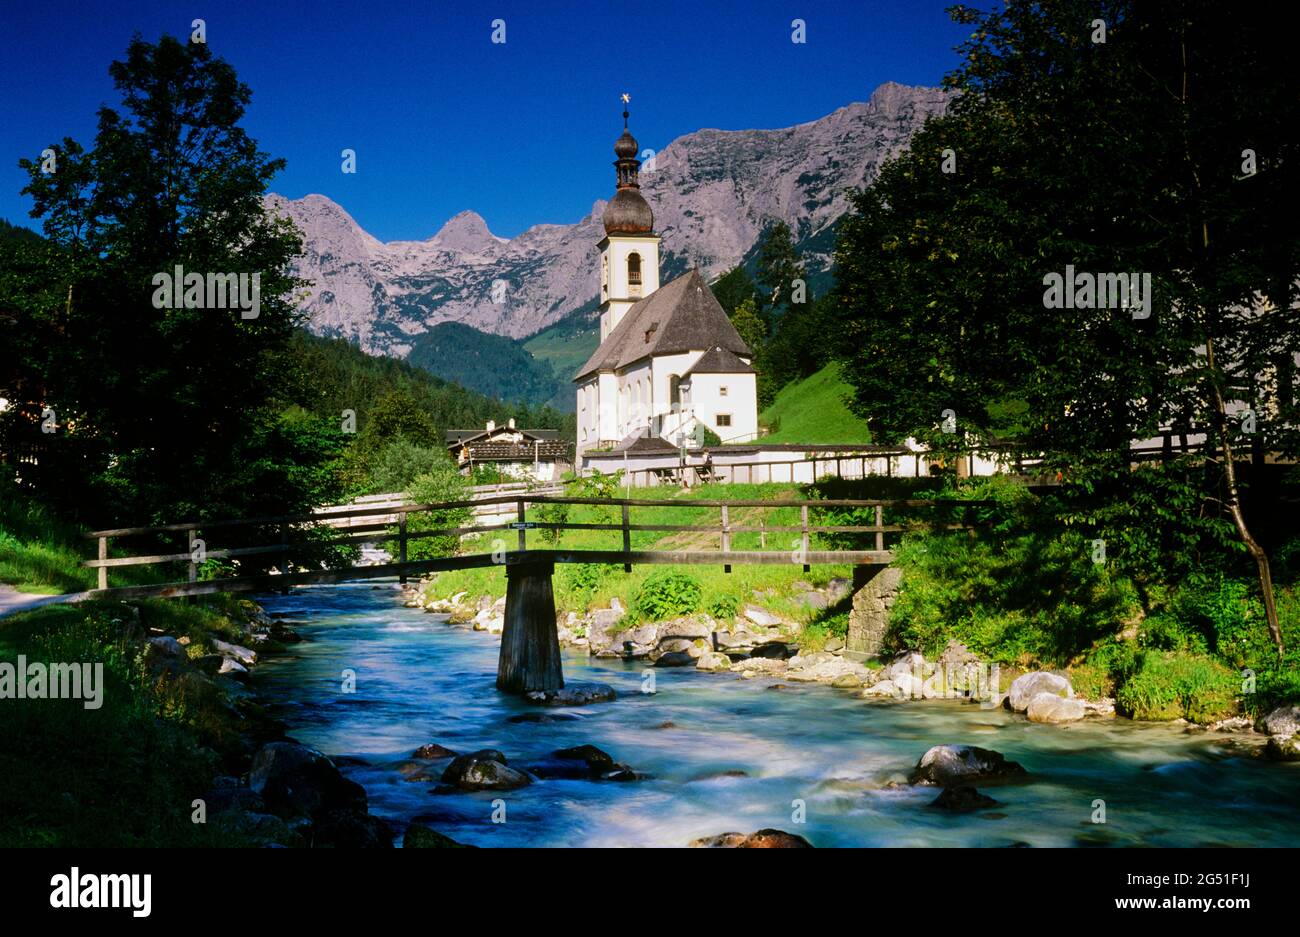 Parish Church of Saint Sebastian, Ramsau, Bavaria, Germany Stock Photo